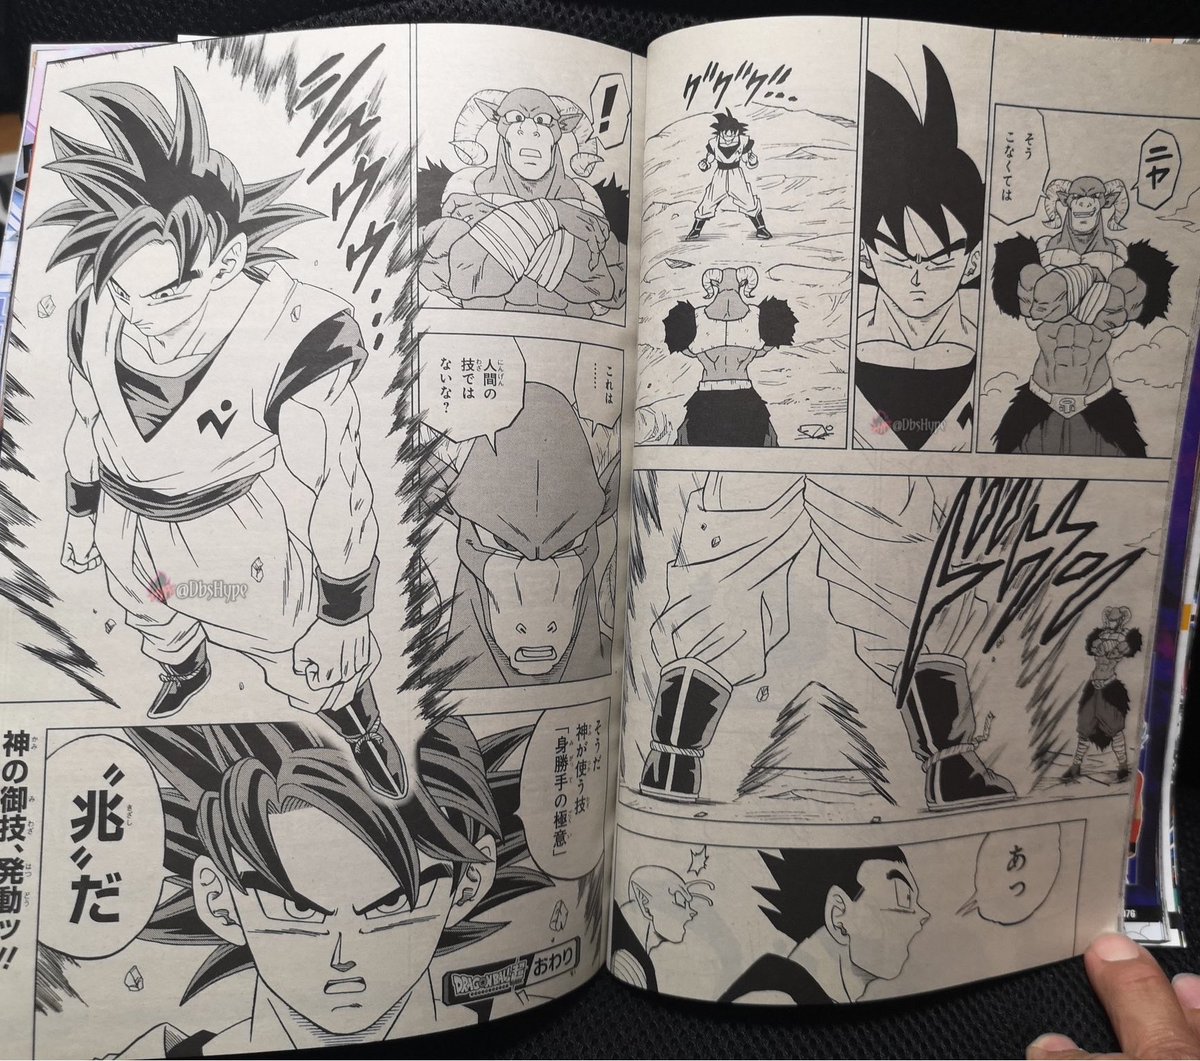 Como ler o Manga Dragon Ball Super 58 Online em Português